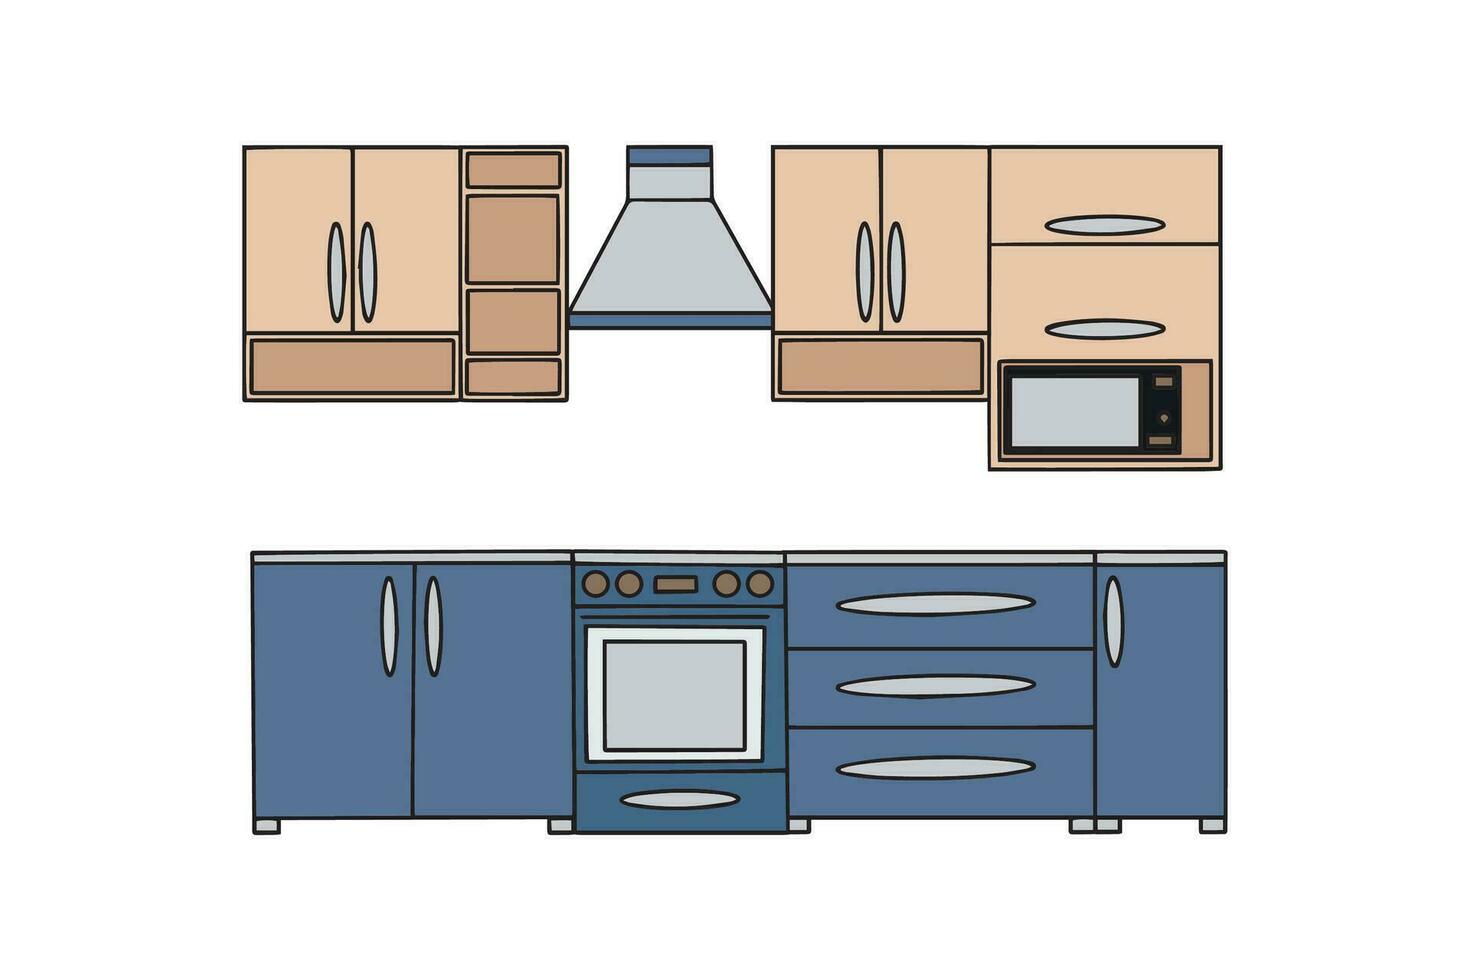 keuken met meubilair. modern knus keuken interieur. vector